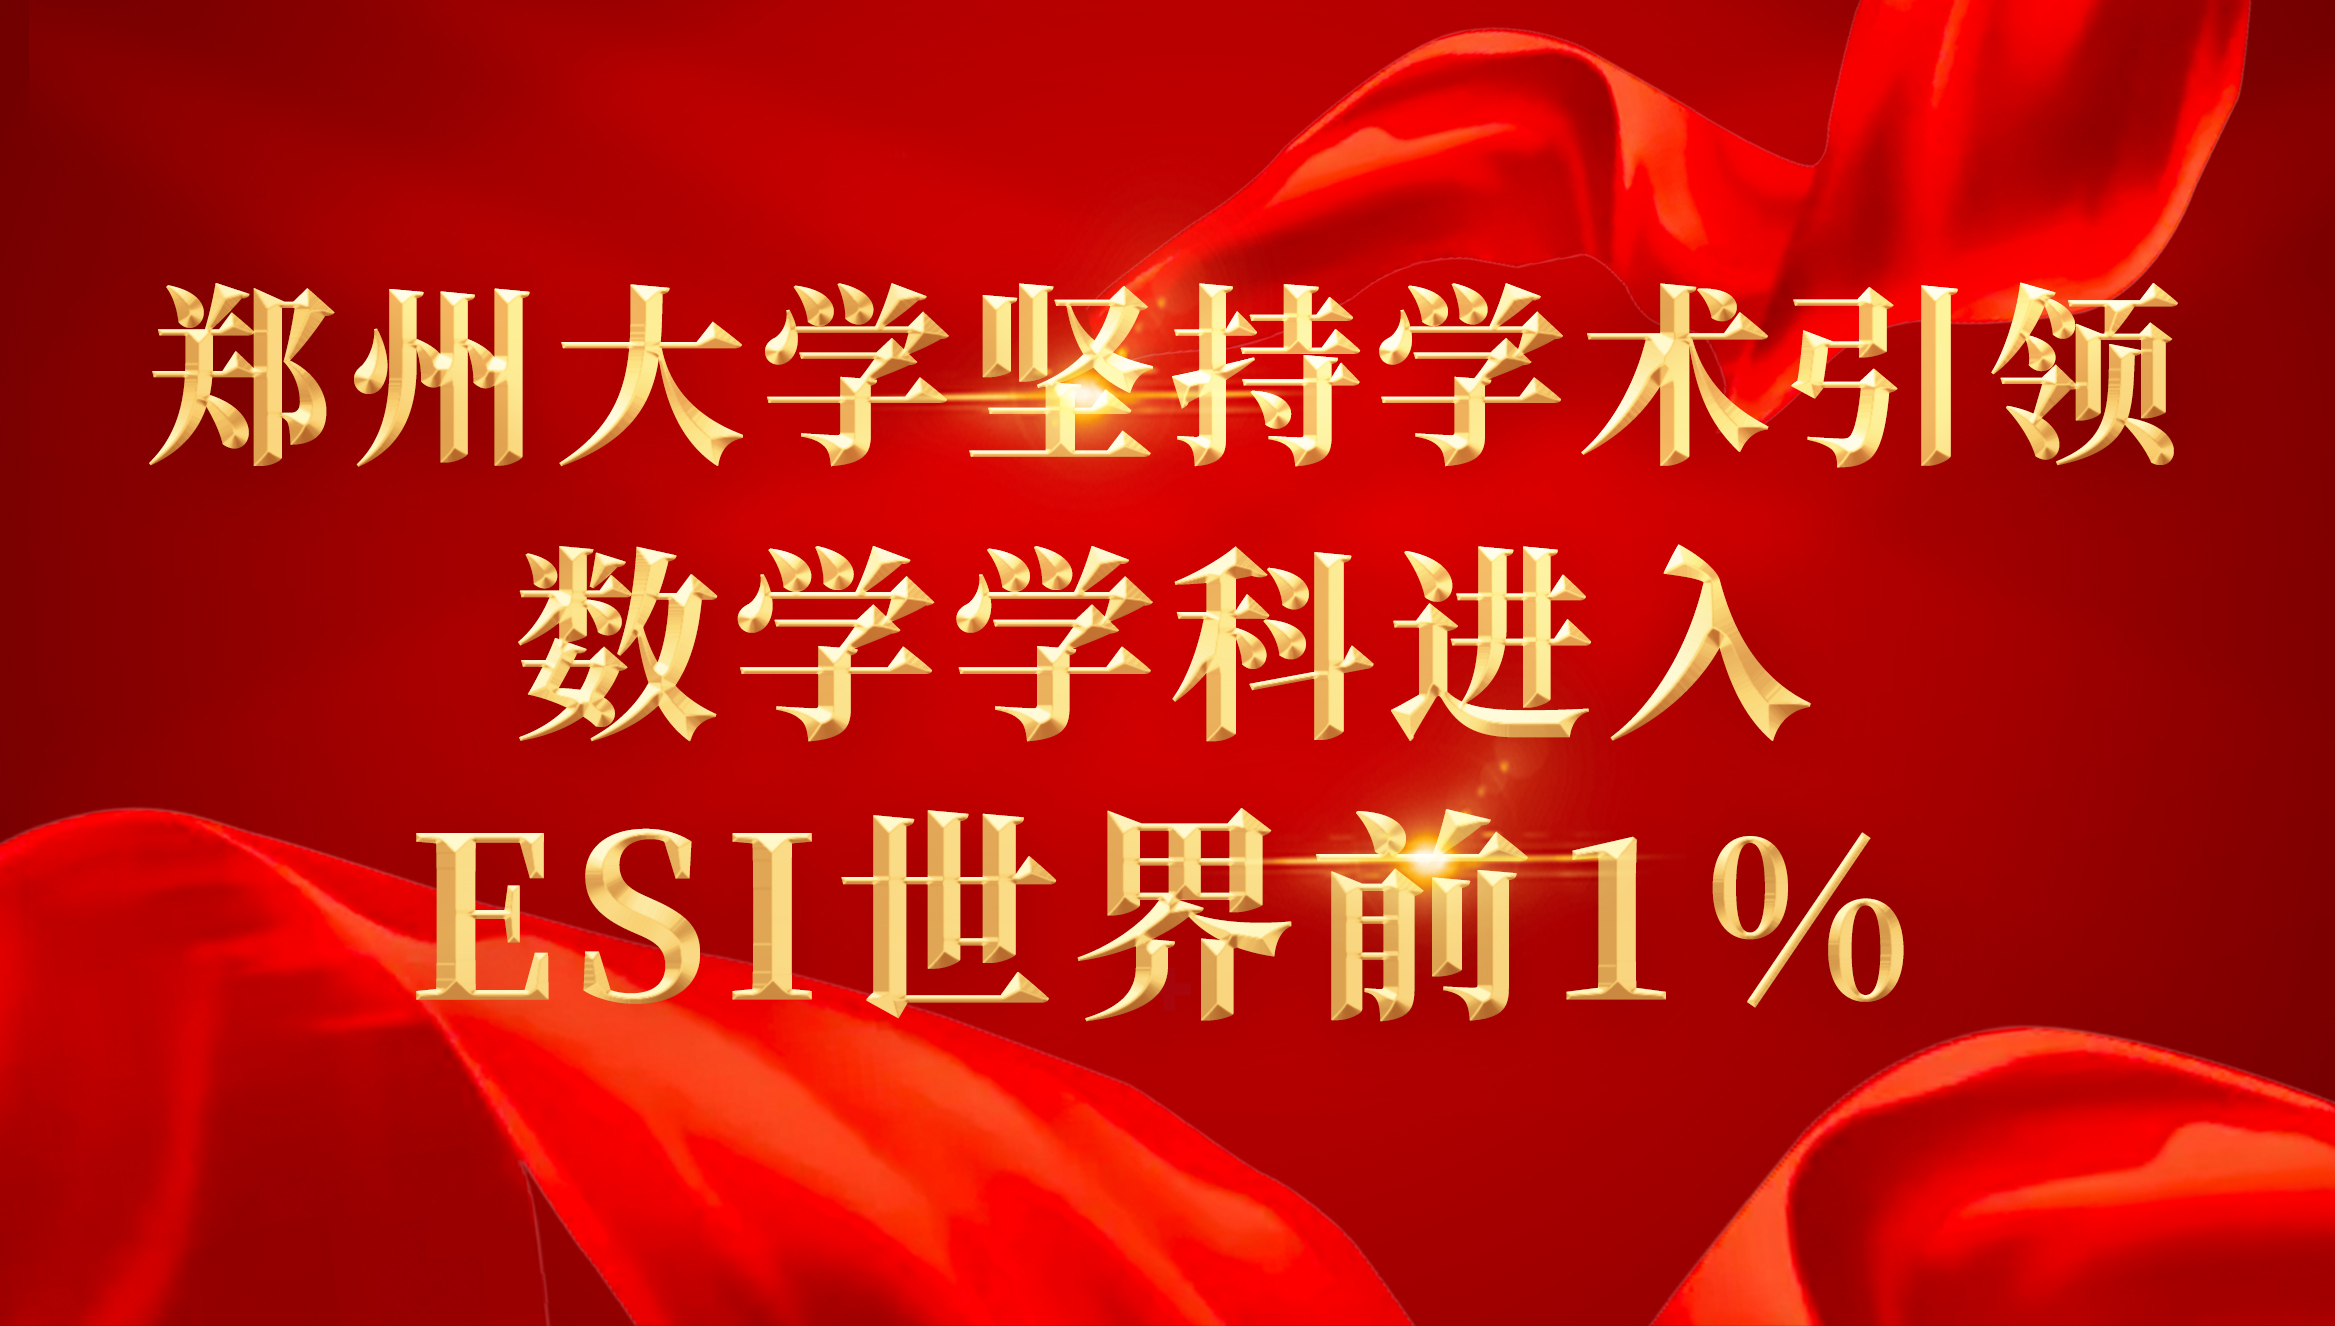 郑州大学坚持学术引领 数学学科进入ESI世界前1%